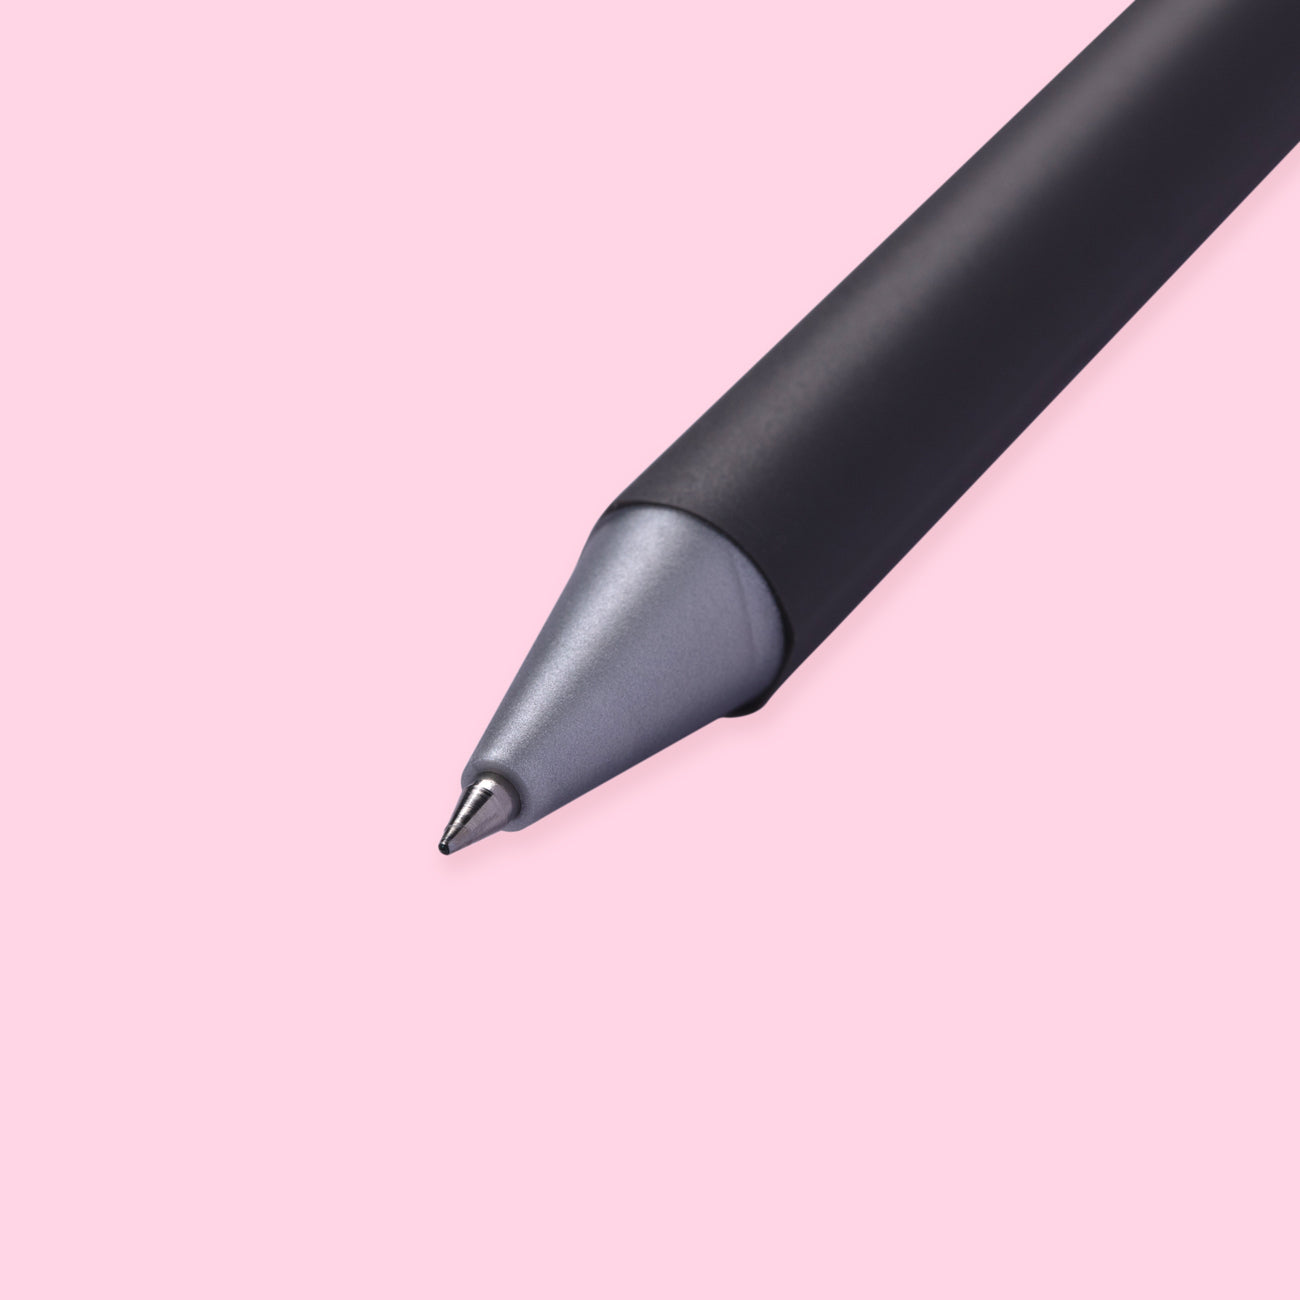 Sakura Ballsign iD Gel Pen - Black - 0.5 mm